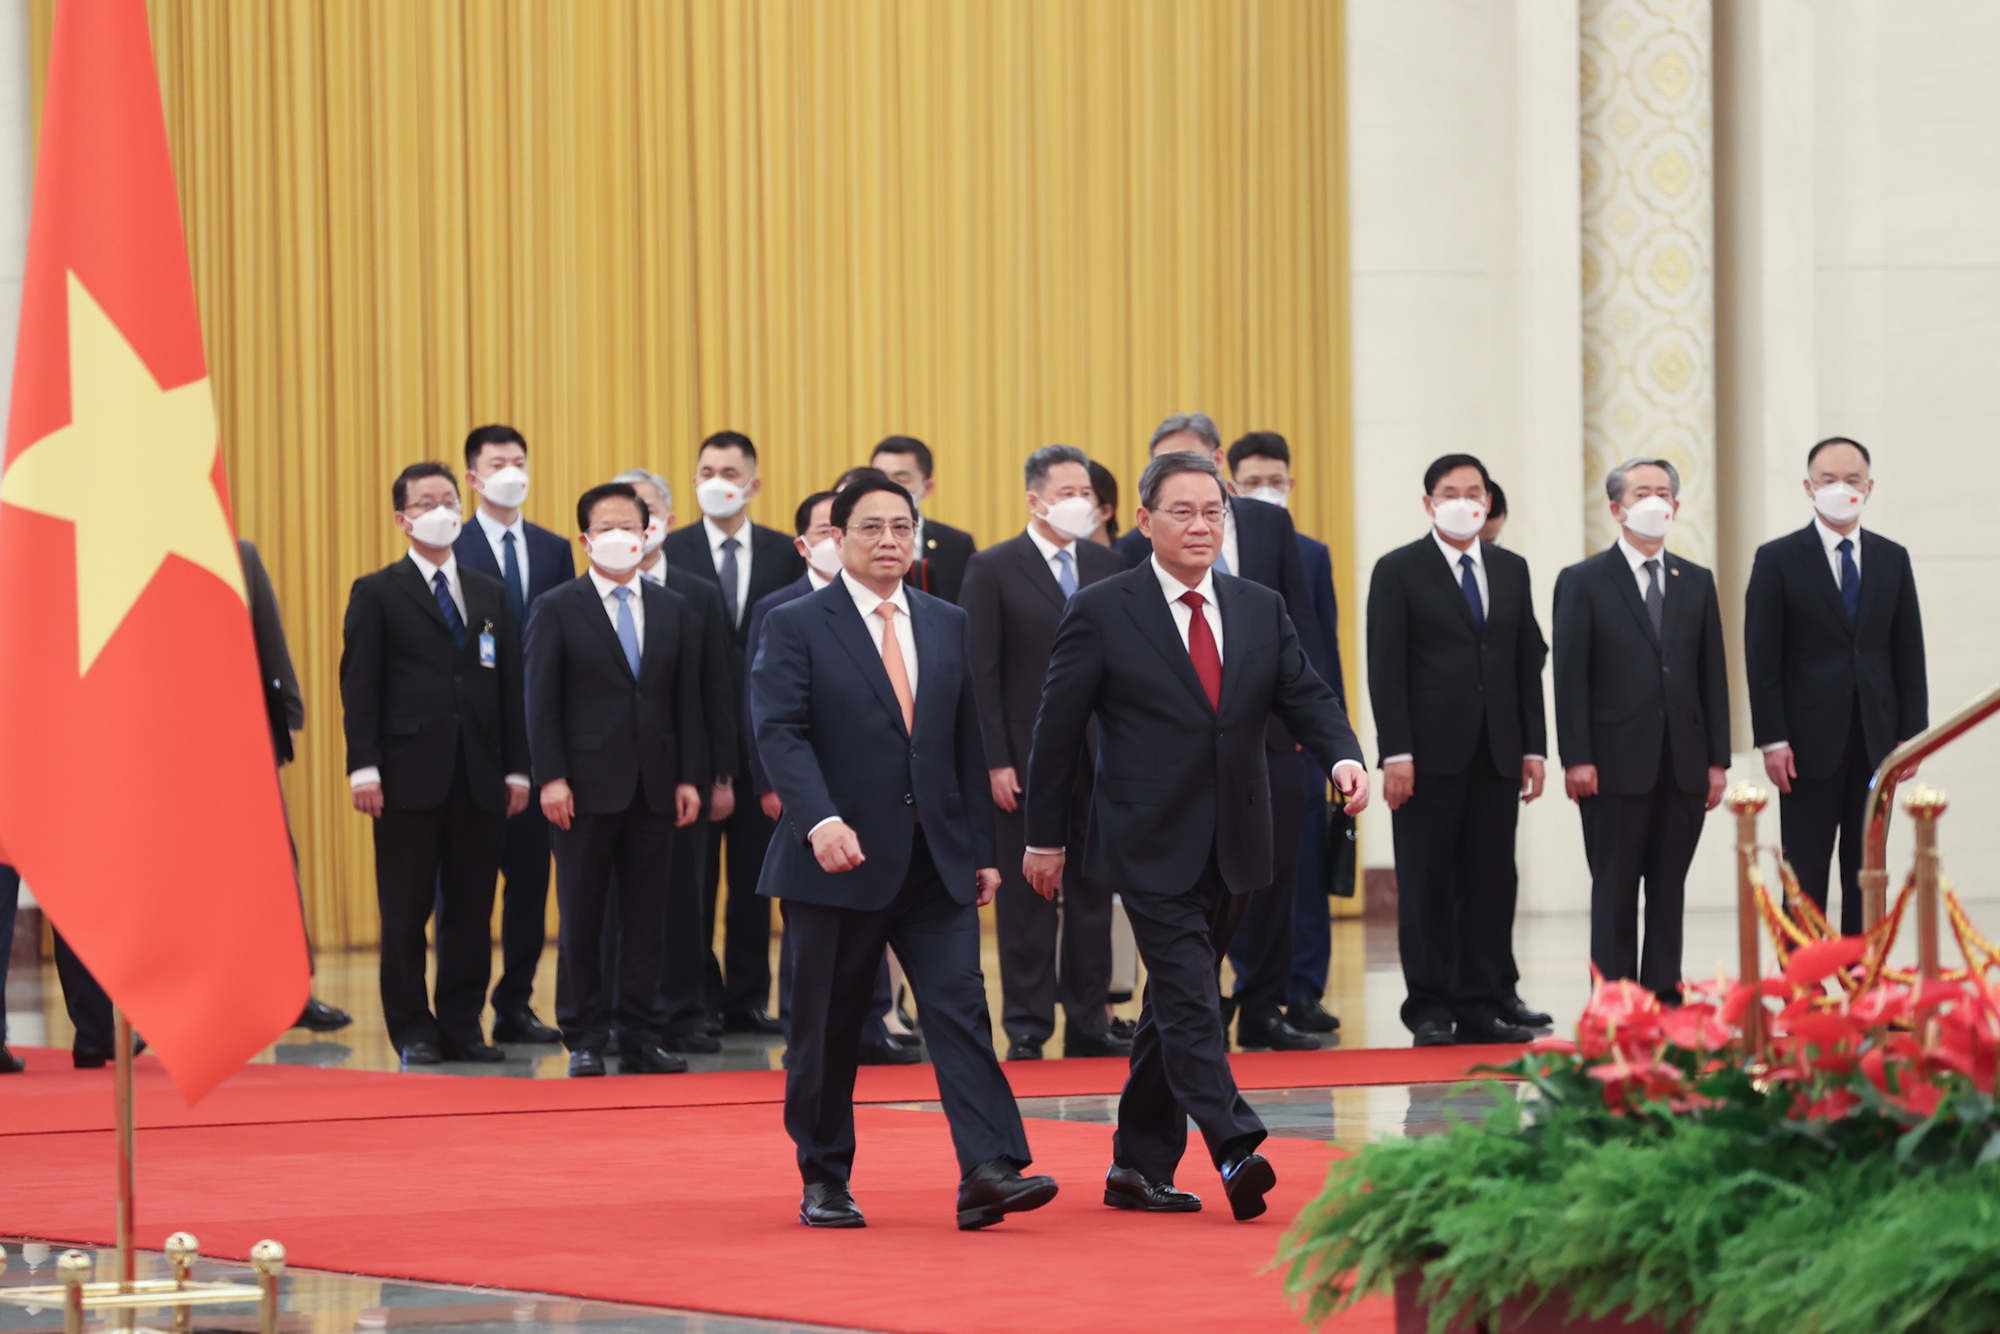 Chùm ảnh: Lễ đón chính thức Thủ tướng Phạm Minh Chính thăm Trung Quốc - Ảnh 3.